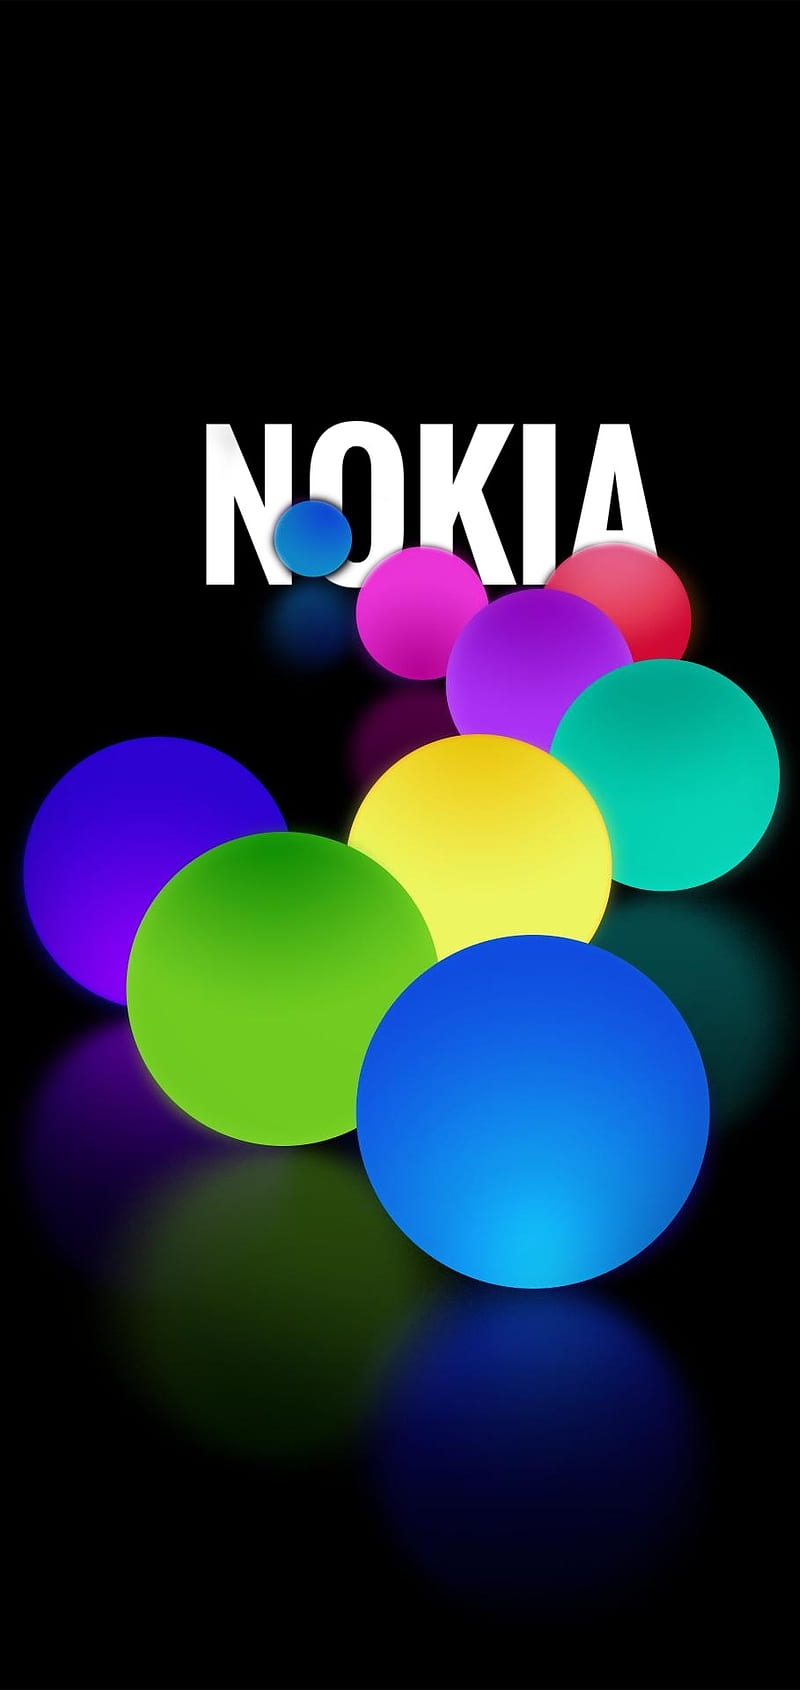 Nokia Welpepar Wallpapers